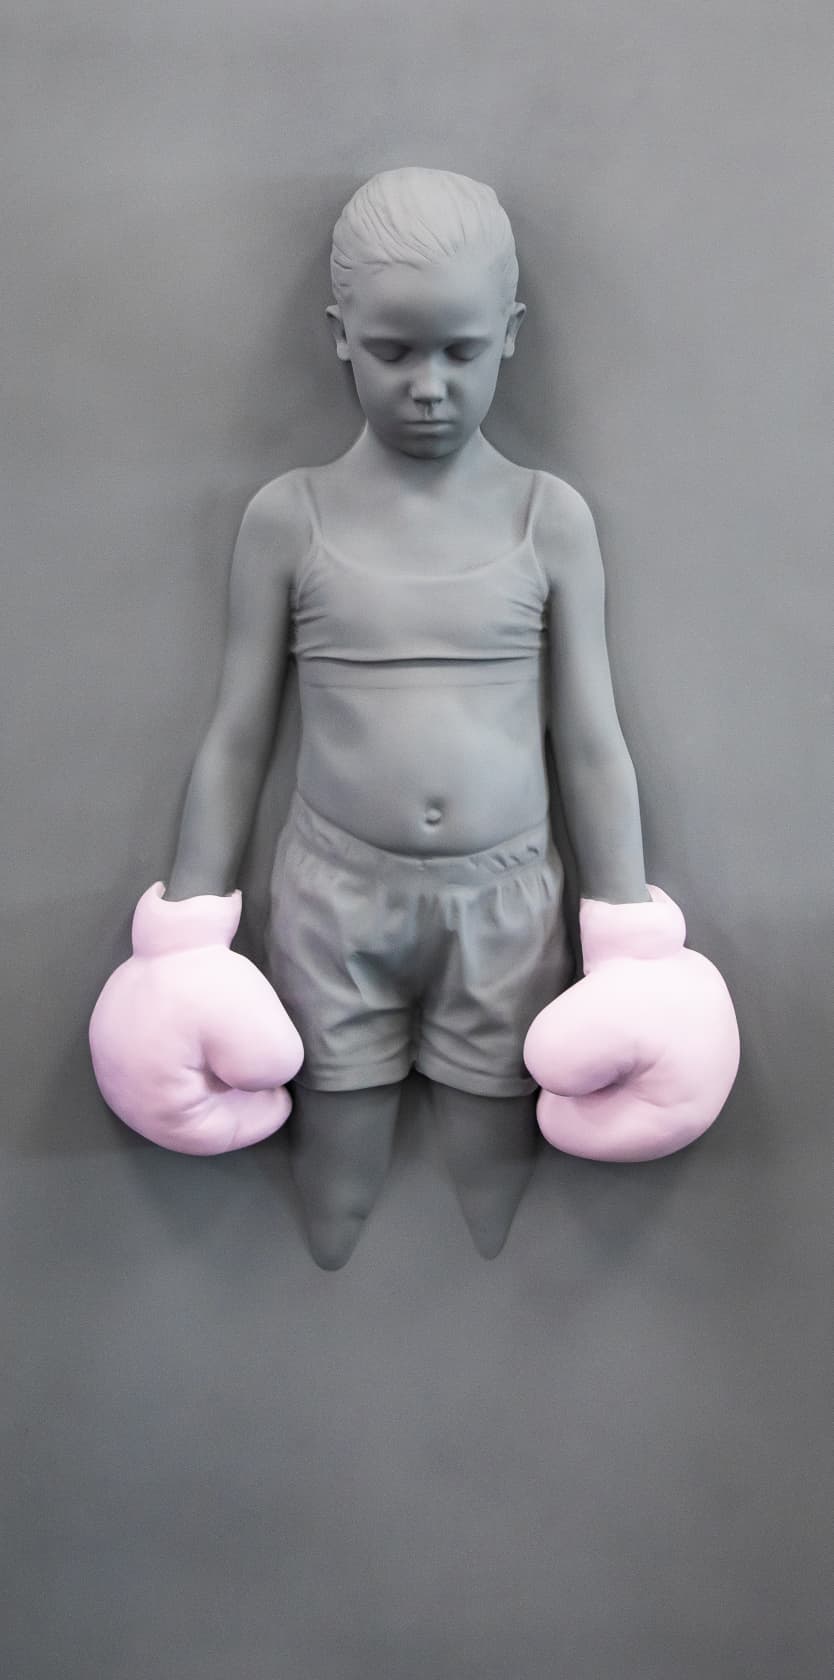 Schoony, Panel Bruiser (Pink Gloves), 2020